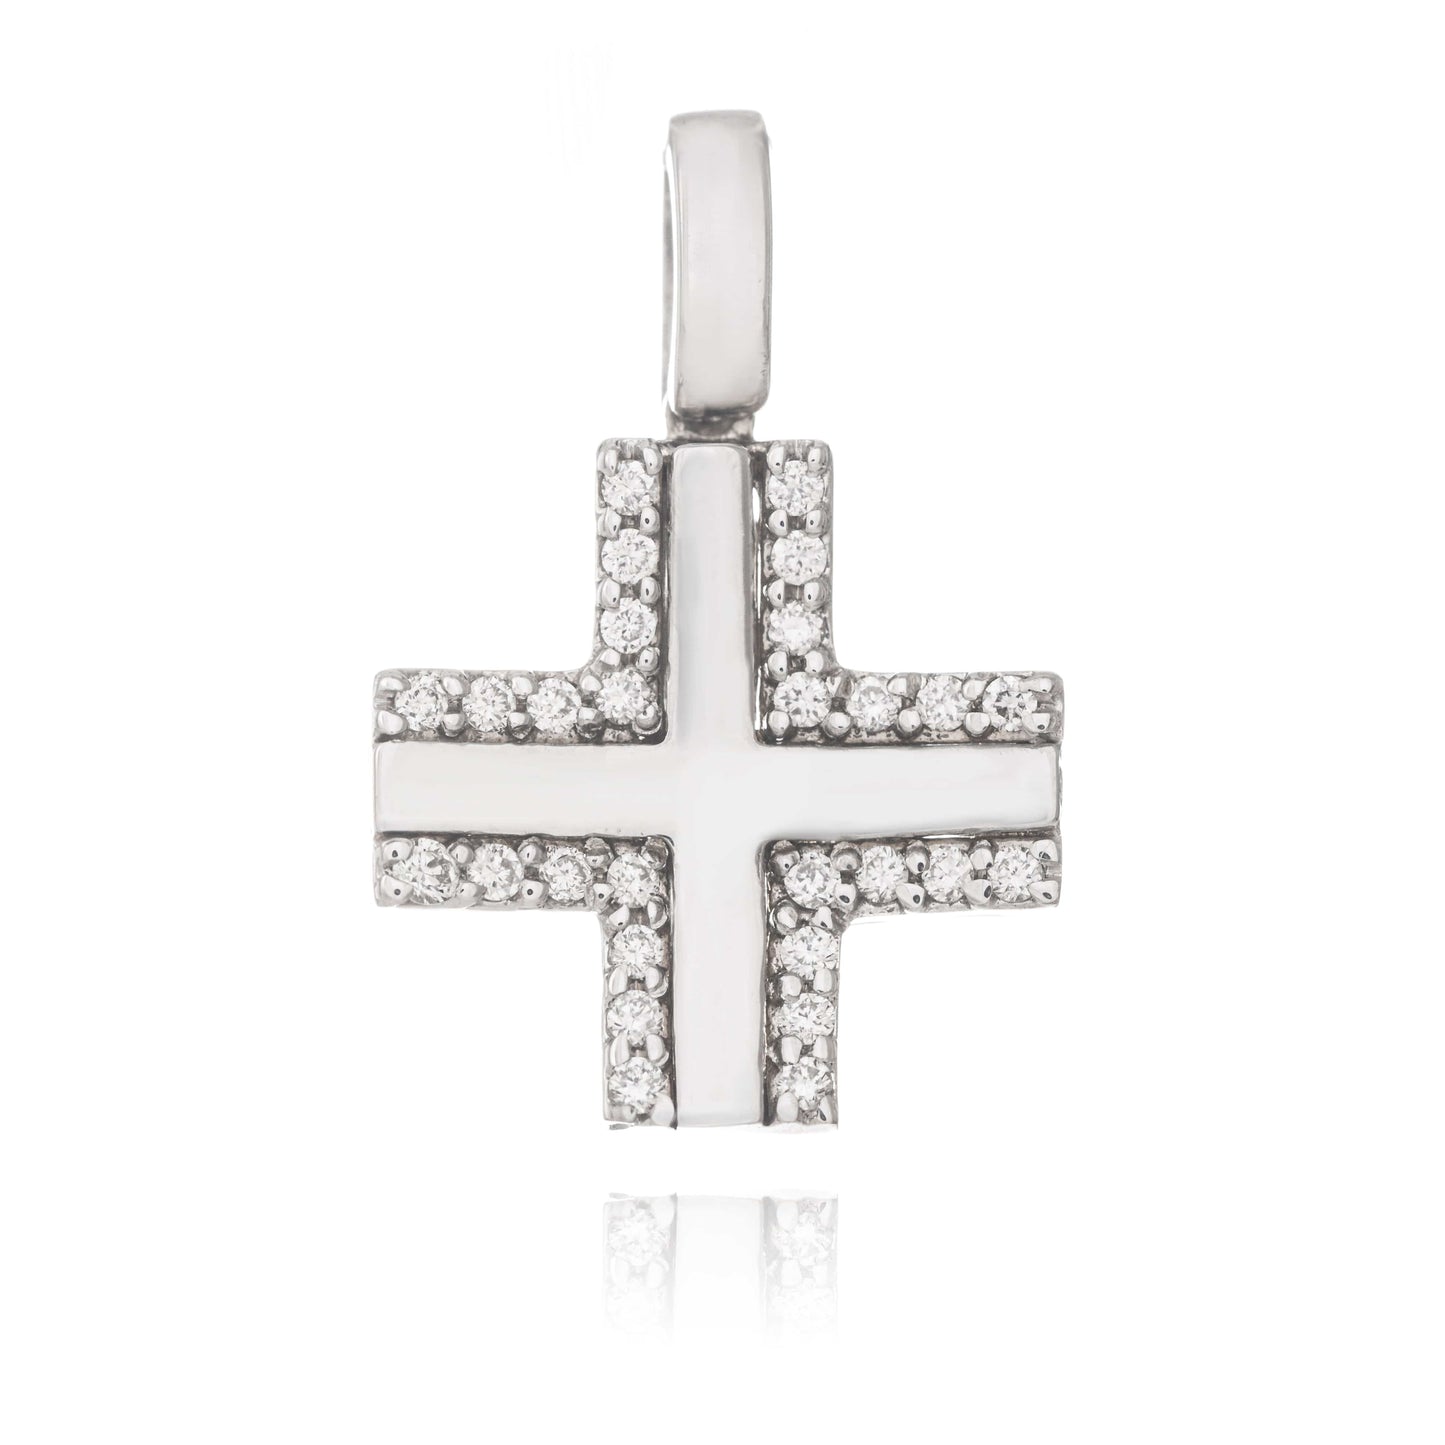 MONDO CATTOLICO Jewelry Cm 1.2 (0.47 in) / Cm 1.2 (0.47 in) Diamonds Cross in White Gold